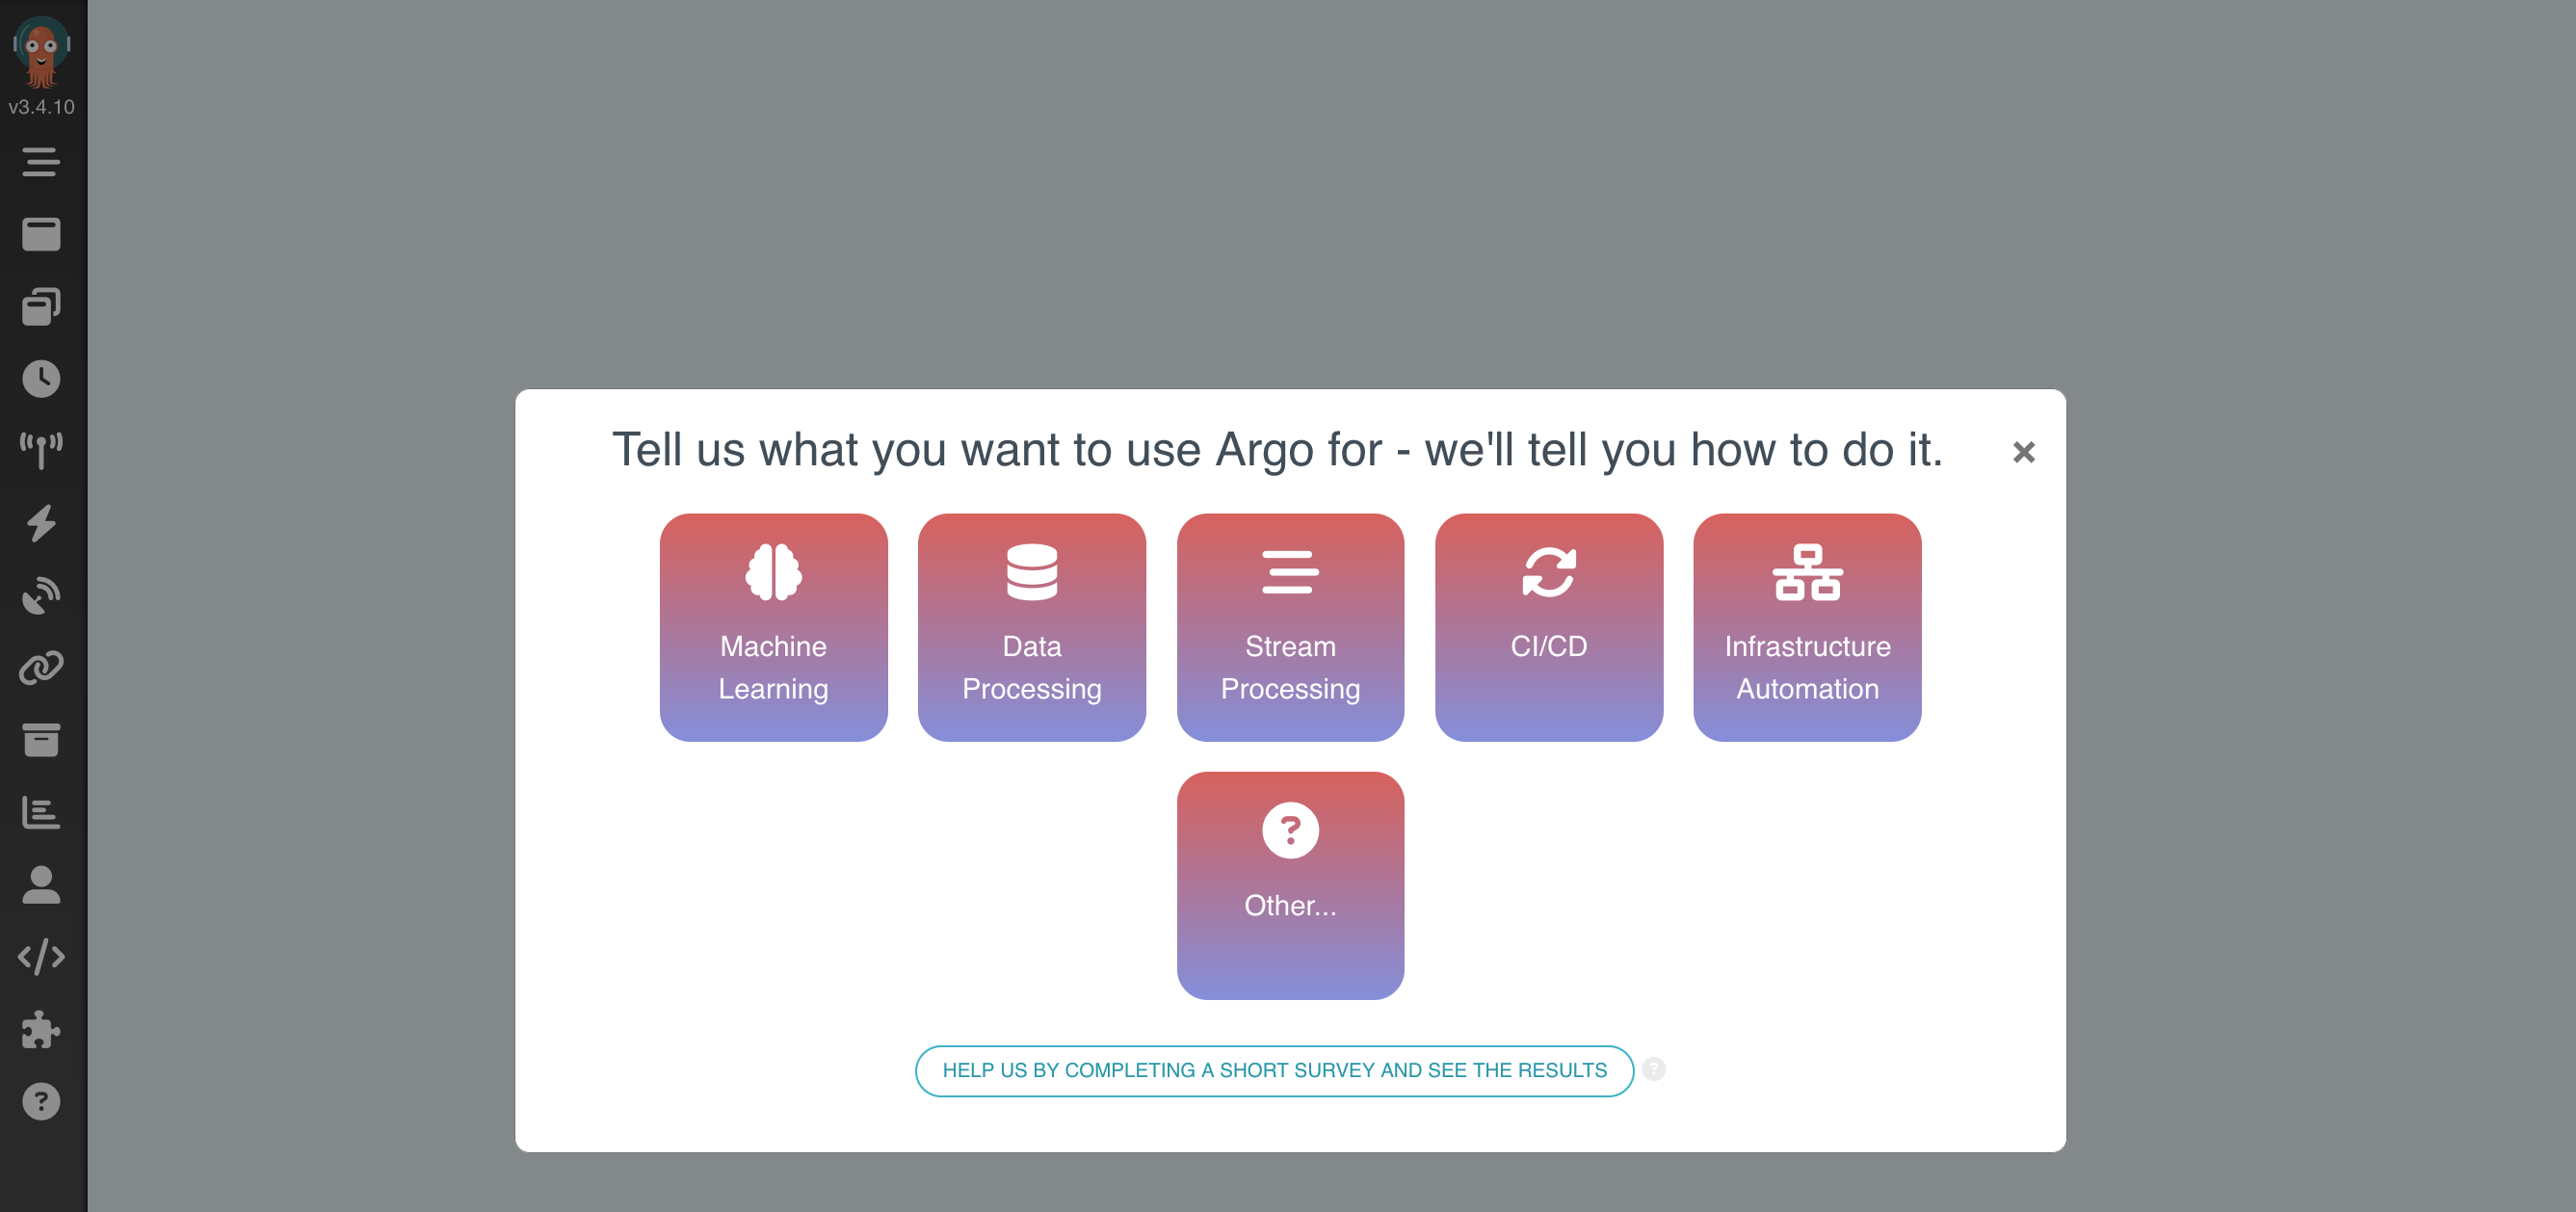 The Argo UI